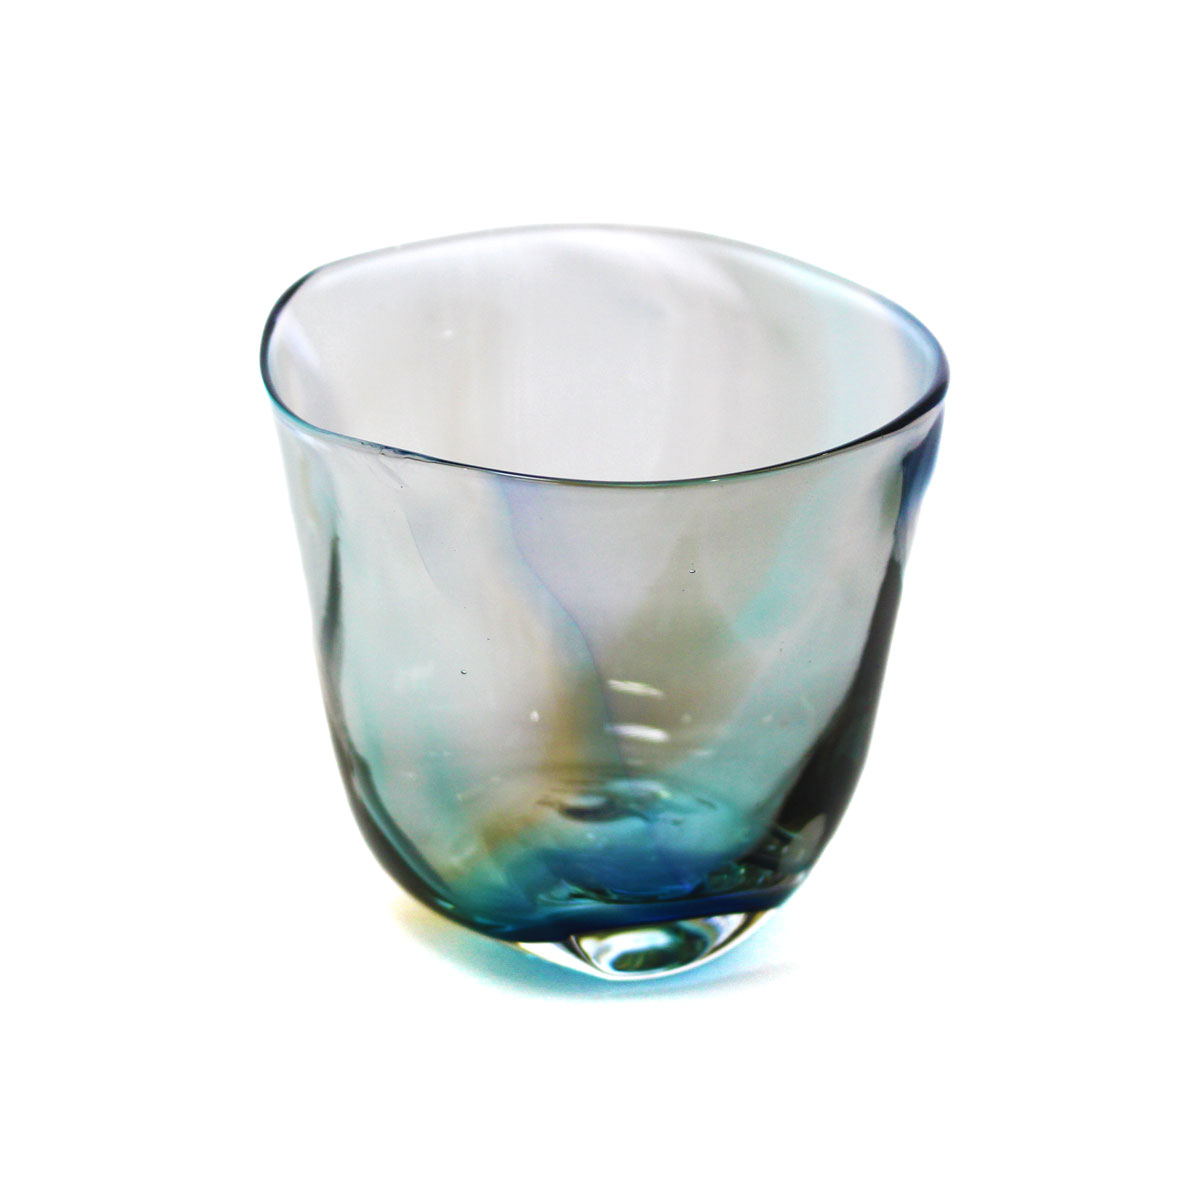 glass calico ミナモearth (ミナモアース) ロックグラス ウイスキー 焼酎 カクテル グラス グラスキャリコ ハンドメイド グラス おしゃれ 来客用 ギフト プレゼント